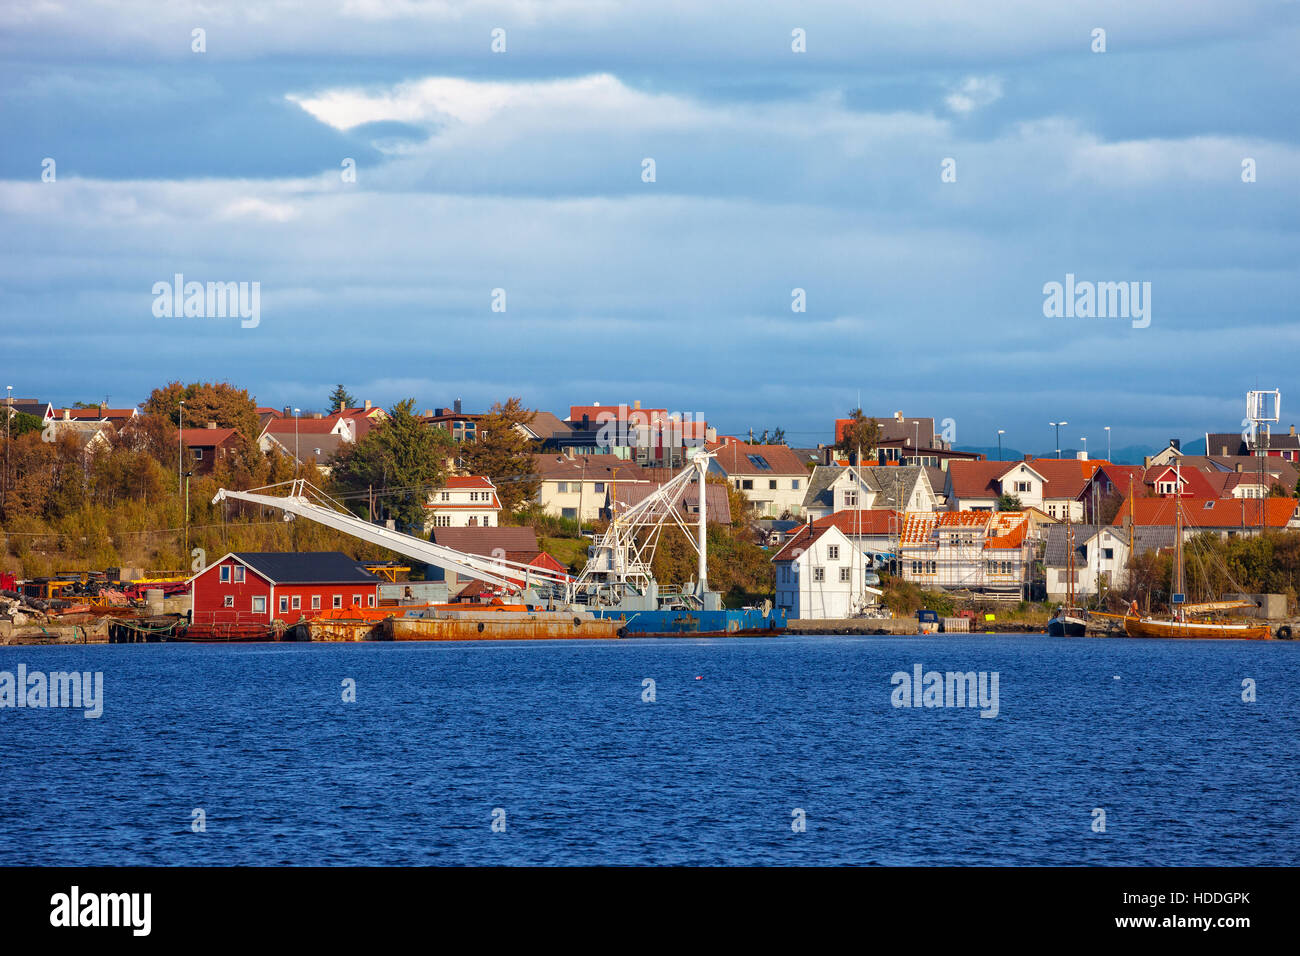 Petit port de pêche dans la région de Stavanger, Norvège. Banque D'Images